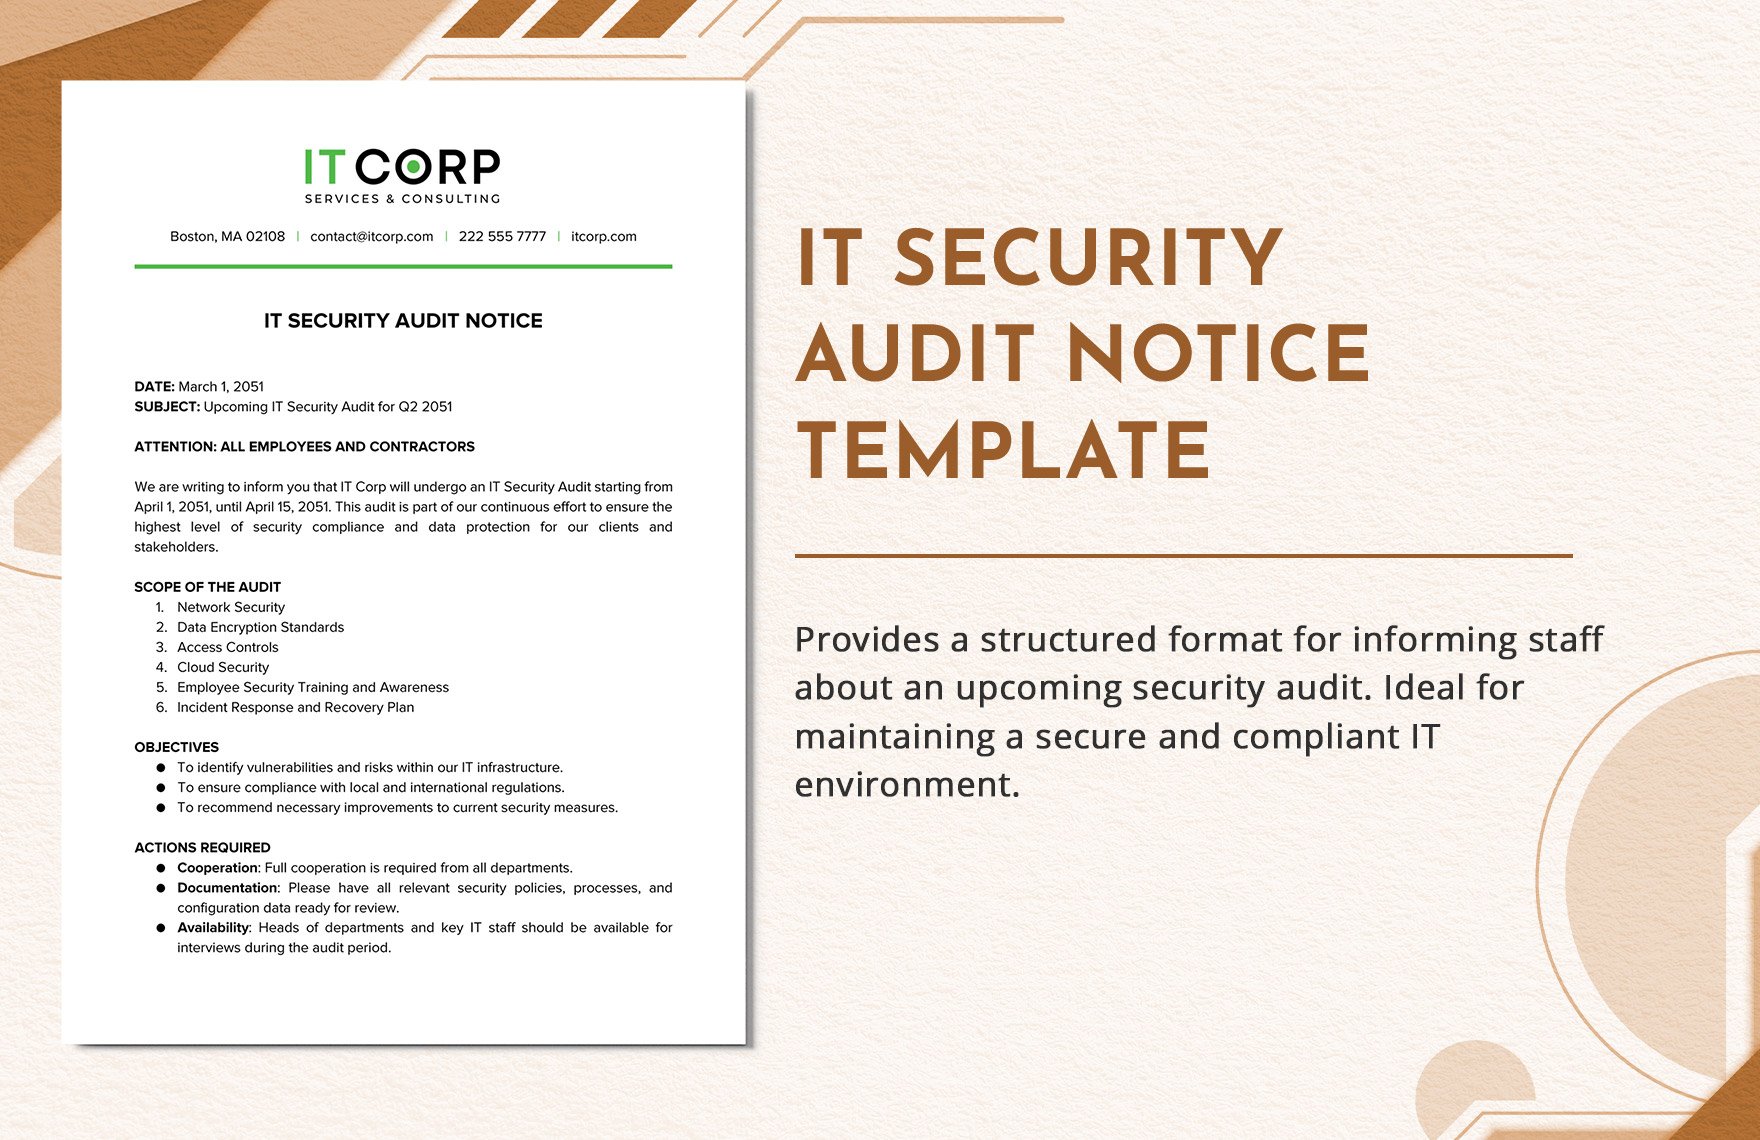 IT Security Audit Notice Template